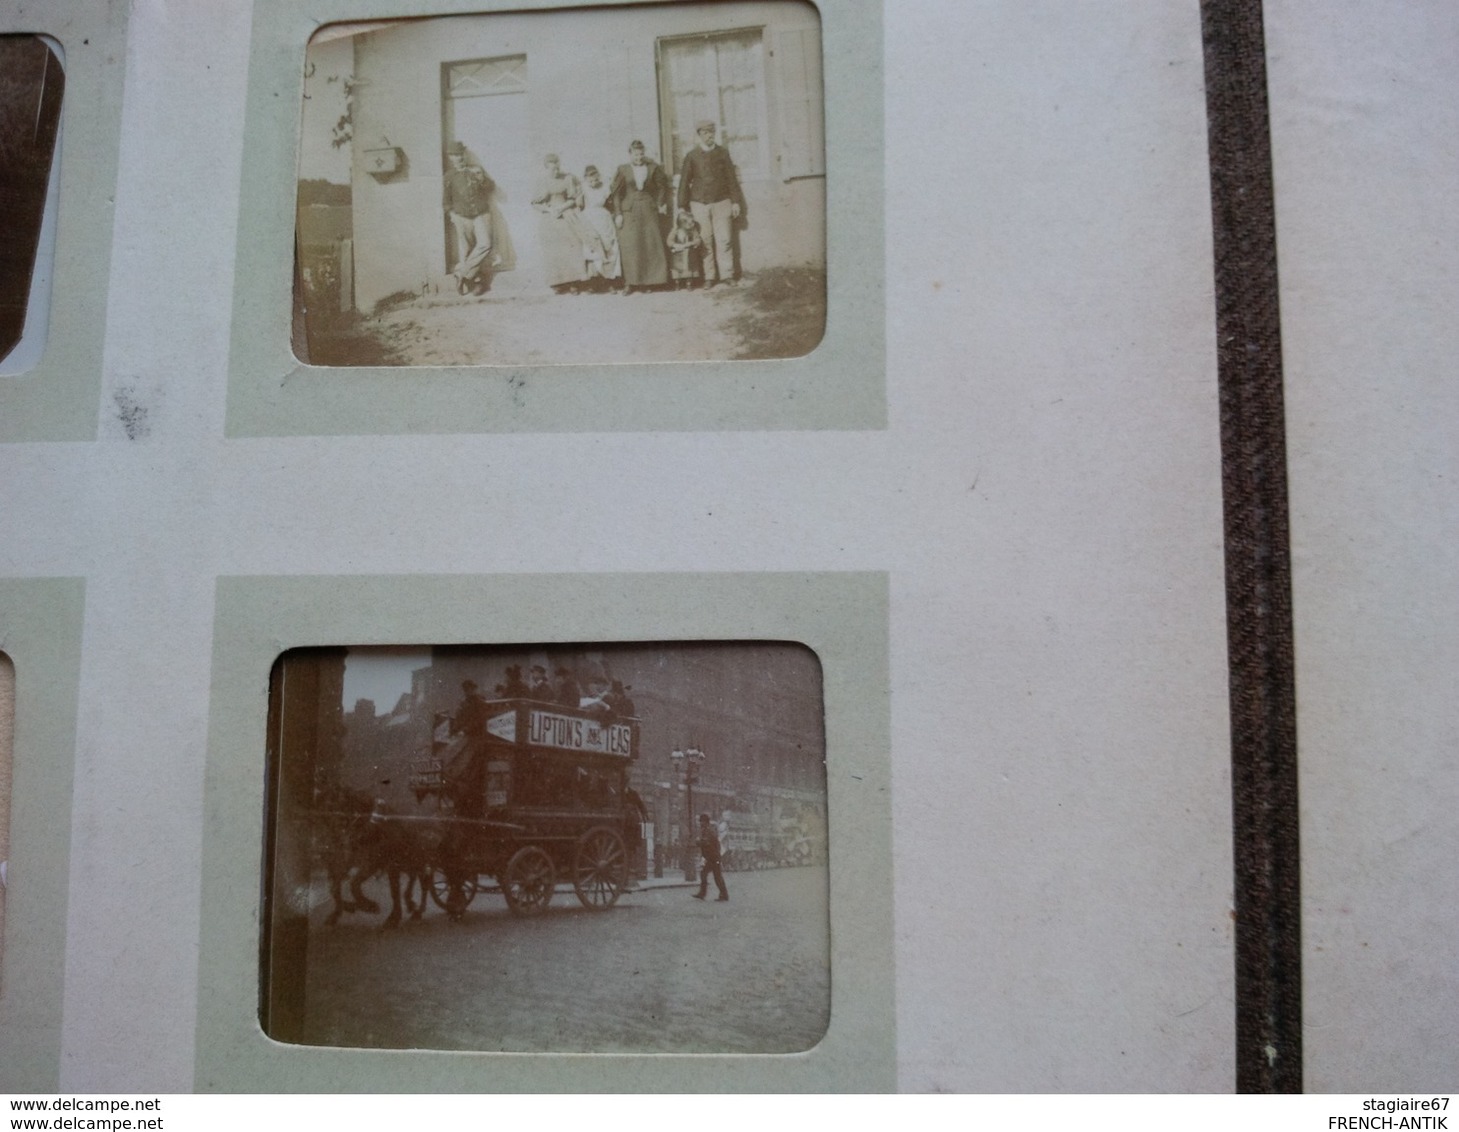 ALBUM PHOTO ANCIEN 1900 ROYAUME UNI PARIS THEMES DIVERS BATEAU CYCLISME ETC - Albums & Collections